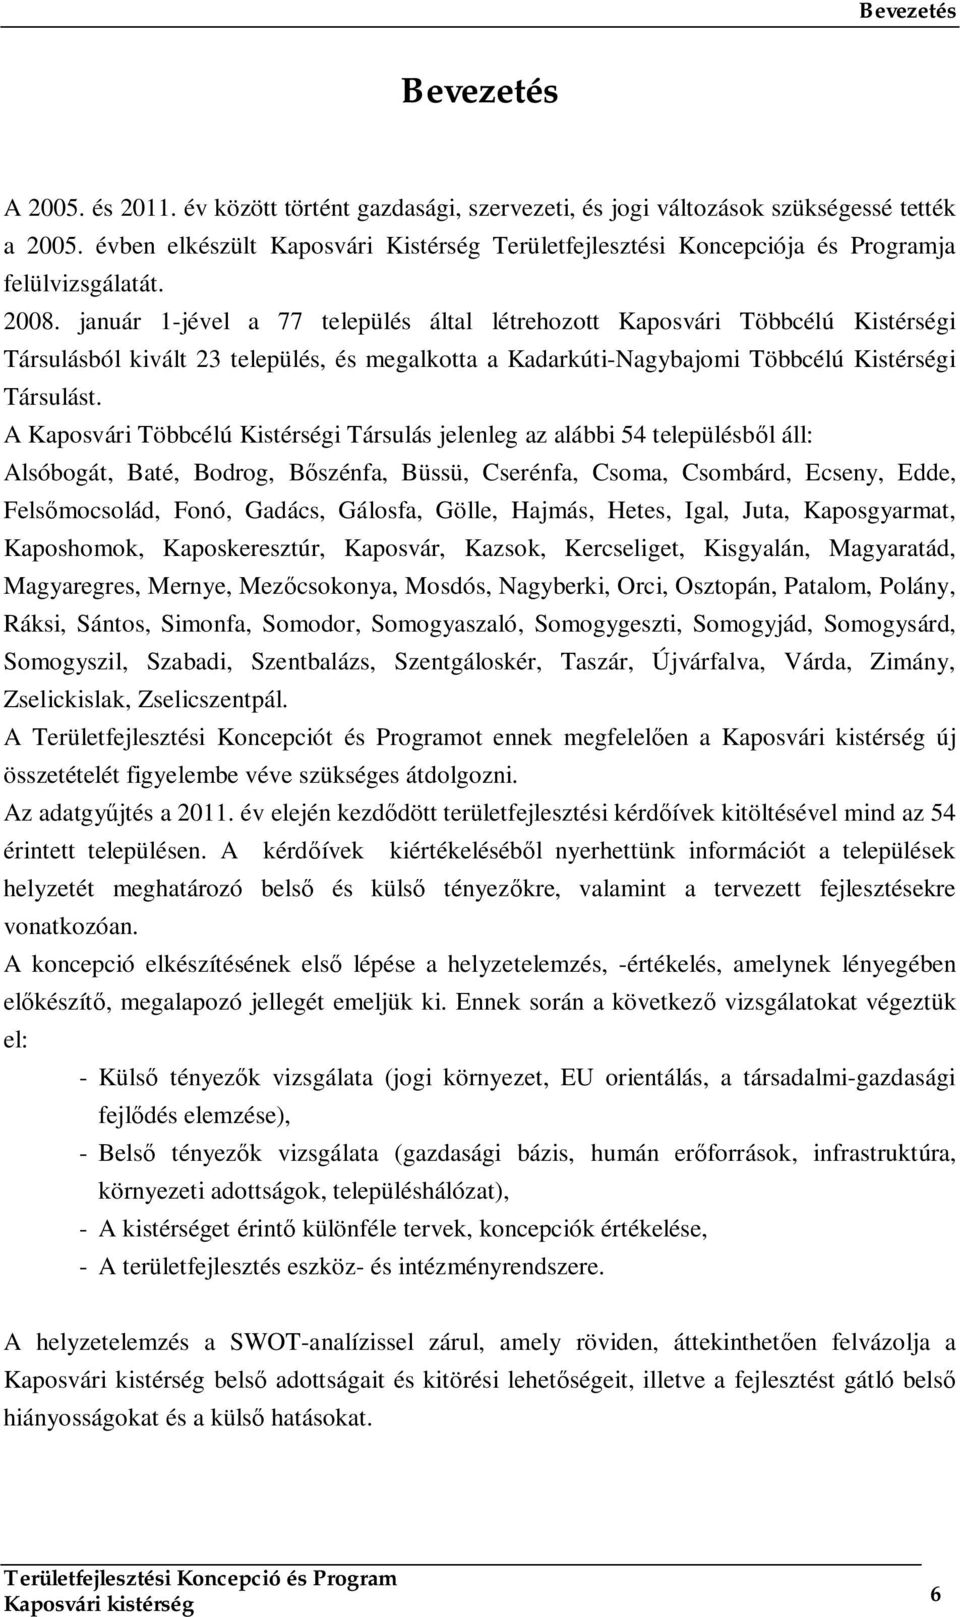 január 1-jével a 77 település által létrehozott Kaposvári Többcélú Kistérségi Társulásból kivált 23 település, és megalkotta a Kadarkúti-Nagybajomi Többcélú Kistérségi Társulást.